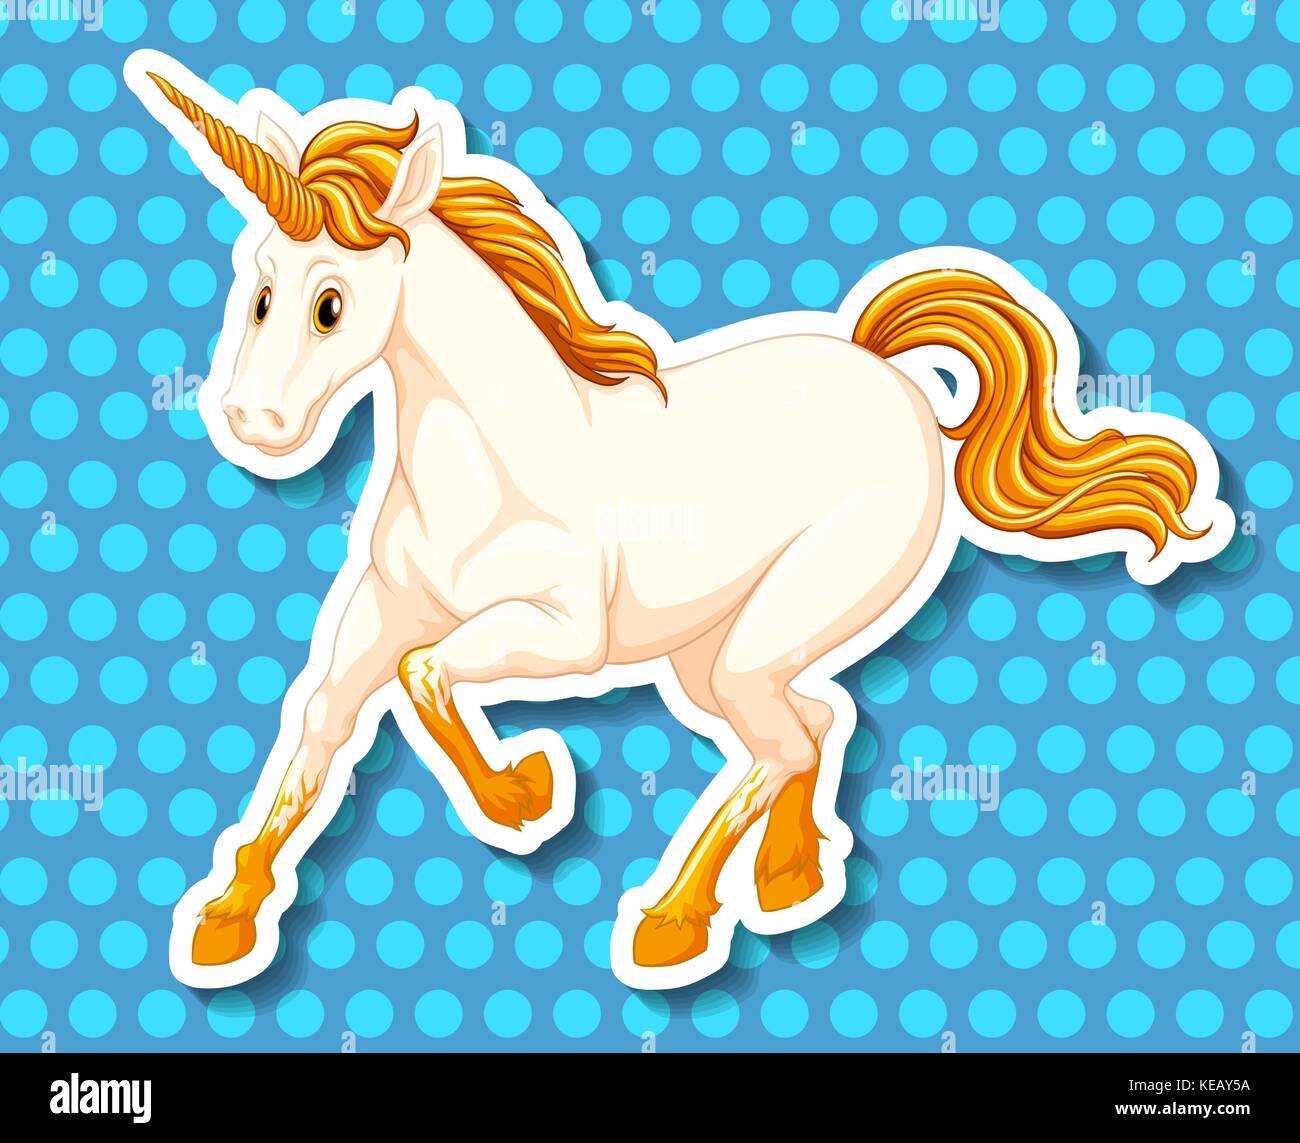 Unico unicorn con Golden Horn e le luci di coda Illustrazione Vettoriale